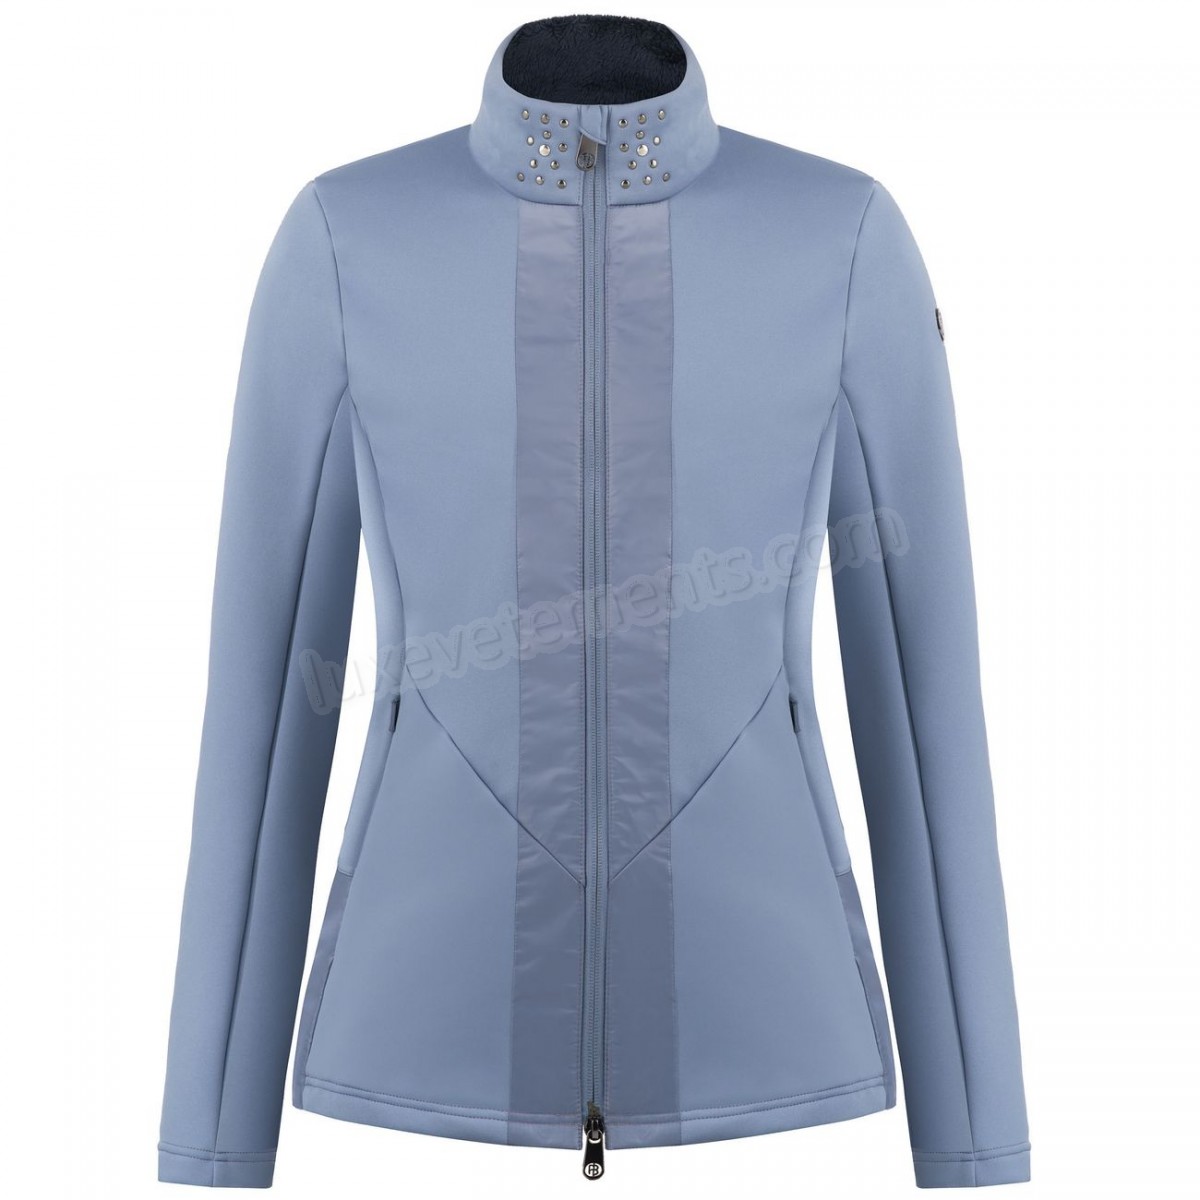 Poivre Blanc-Sports d'hiver femme POIVRE BLANC Veste En Polaire Poivre Blanc Hybrid Stretch Fleece Jacket 1702 Shadow Blue Femme Vente en ligne - -1